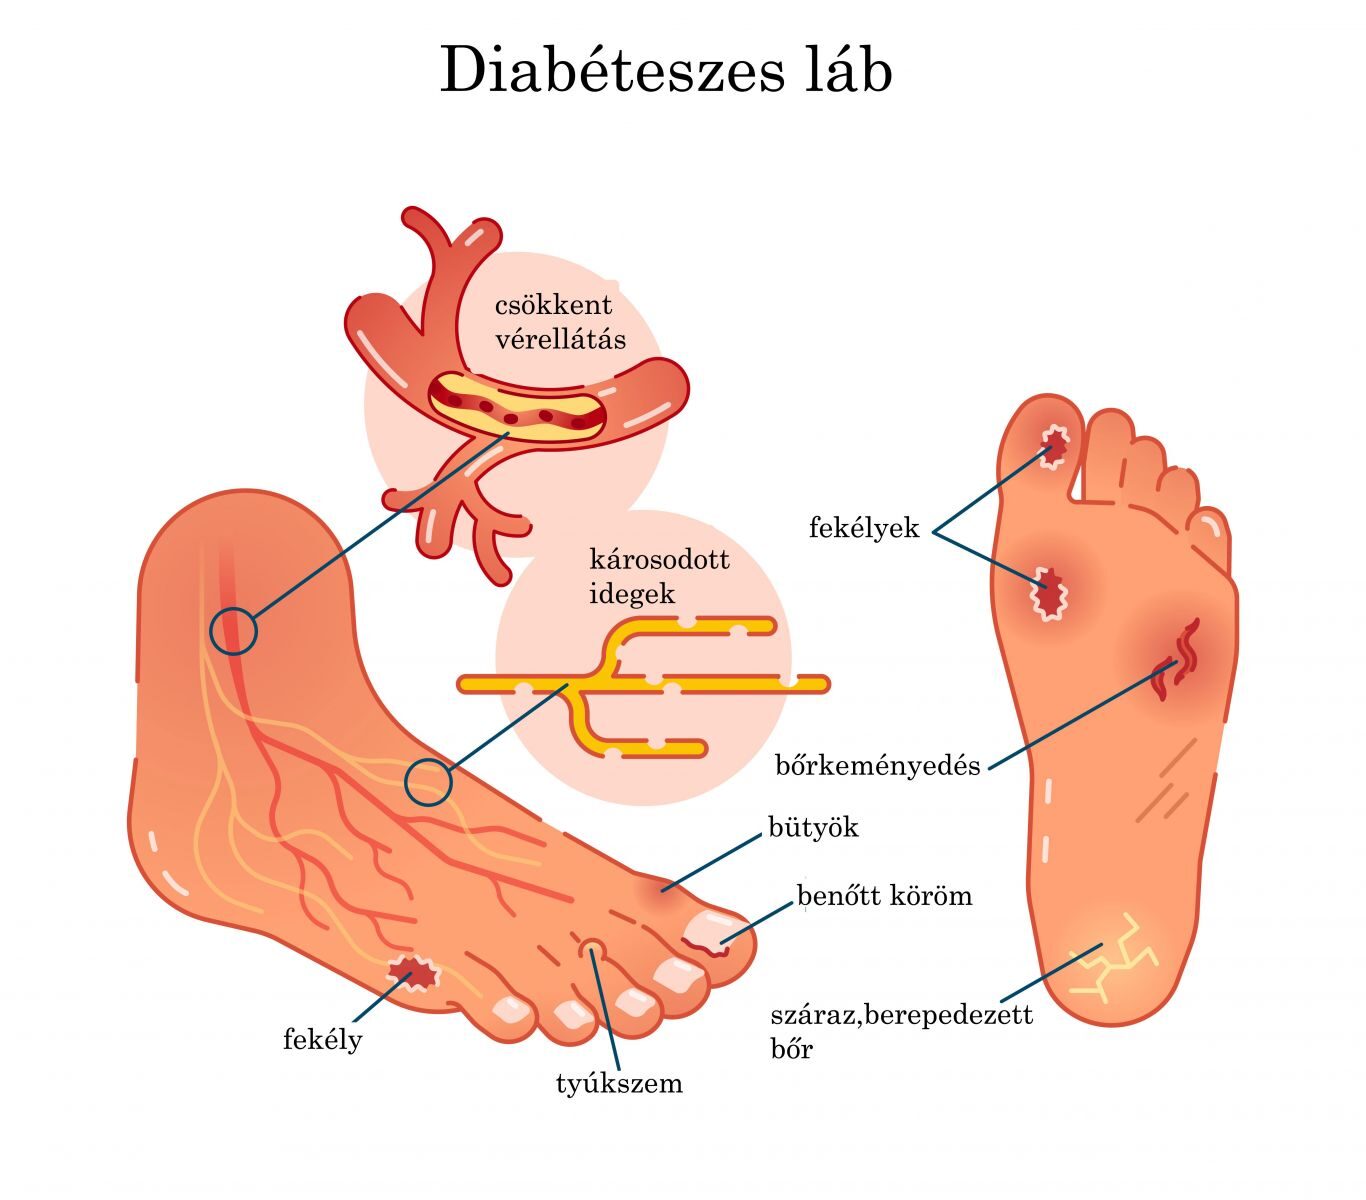 hypertension treatment in diabetic patients a diabétesz alacsony szénhidráttartalmú diéta